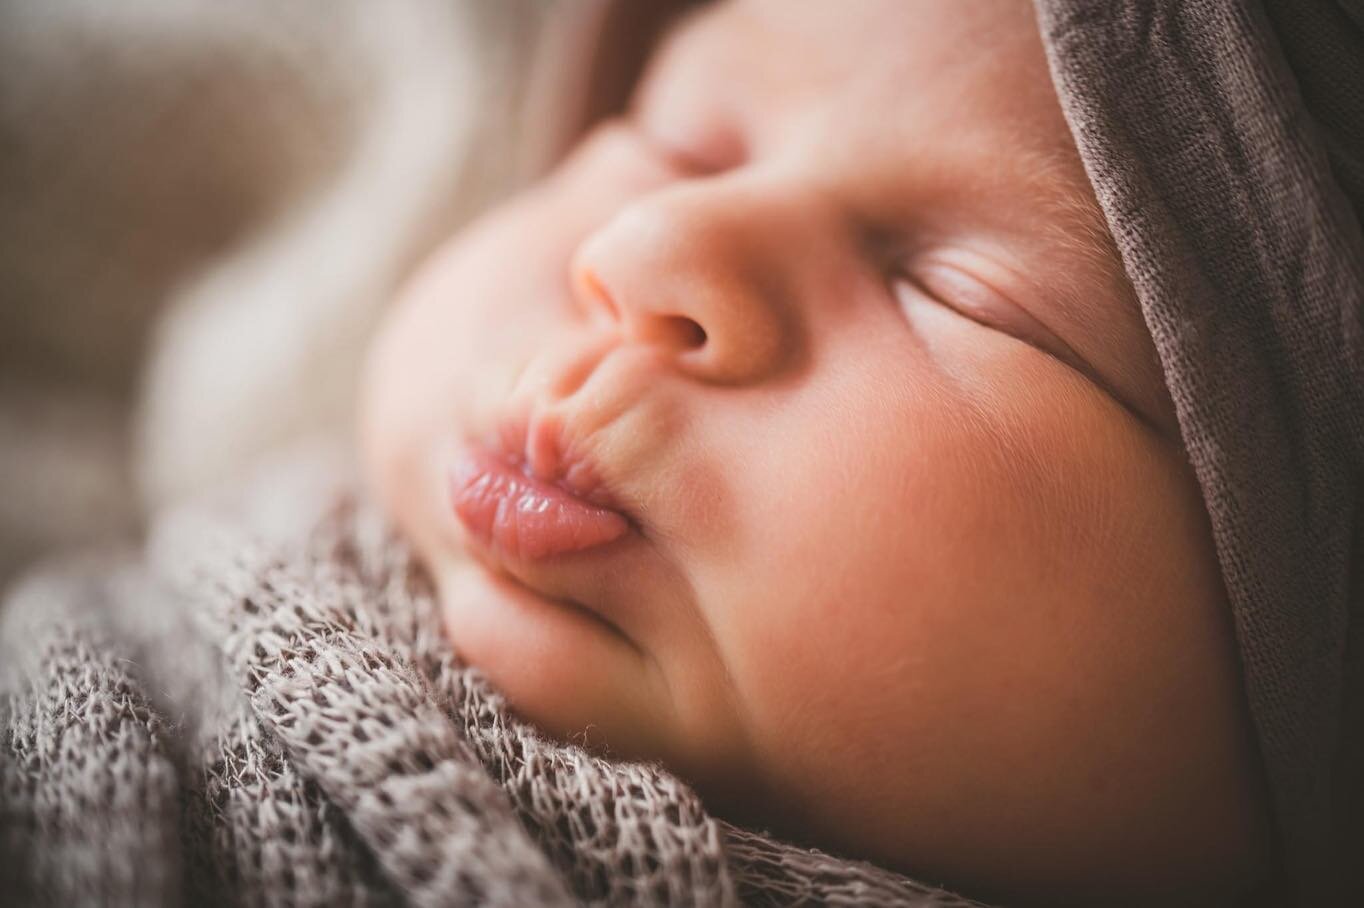 Cheeks + Lips 😍

#newbornphotography #newborn #lifestyle #babygirl #iowaphotographer #studio #brandeddesignphotography #mom #dad #iowanewbornphotographer #lifestylephotography #baby